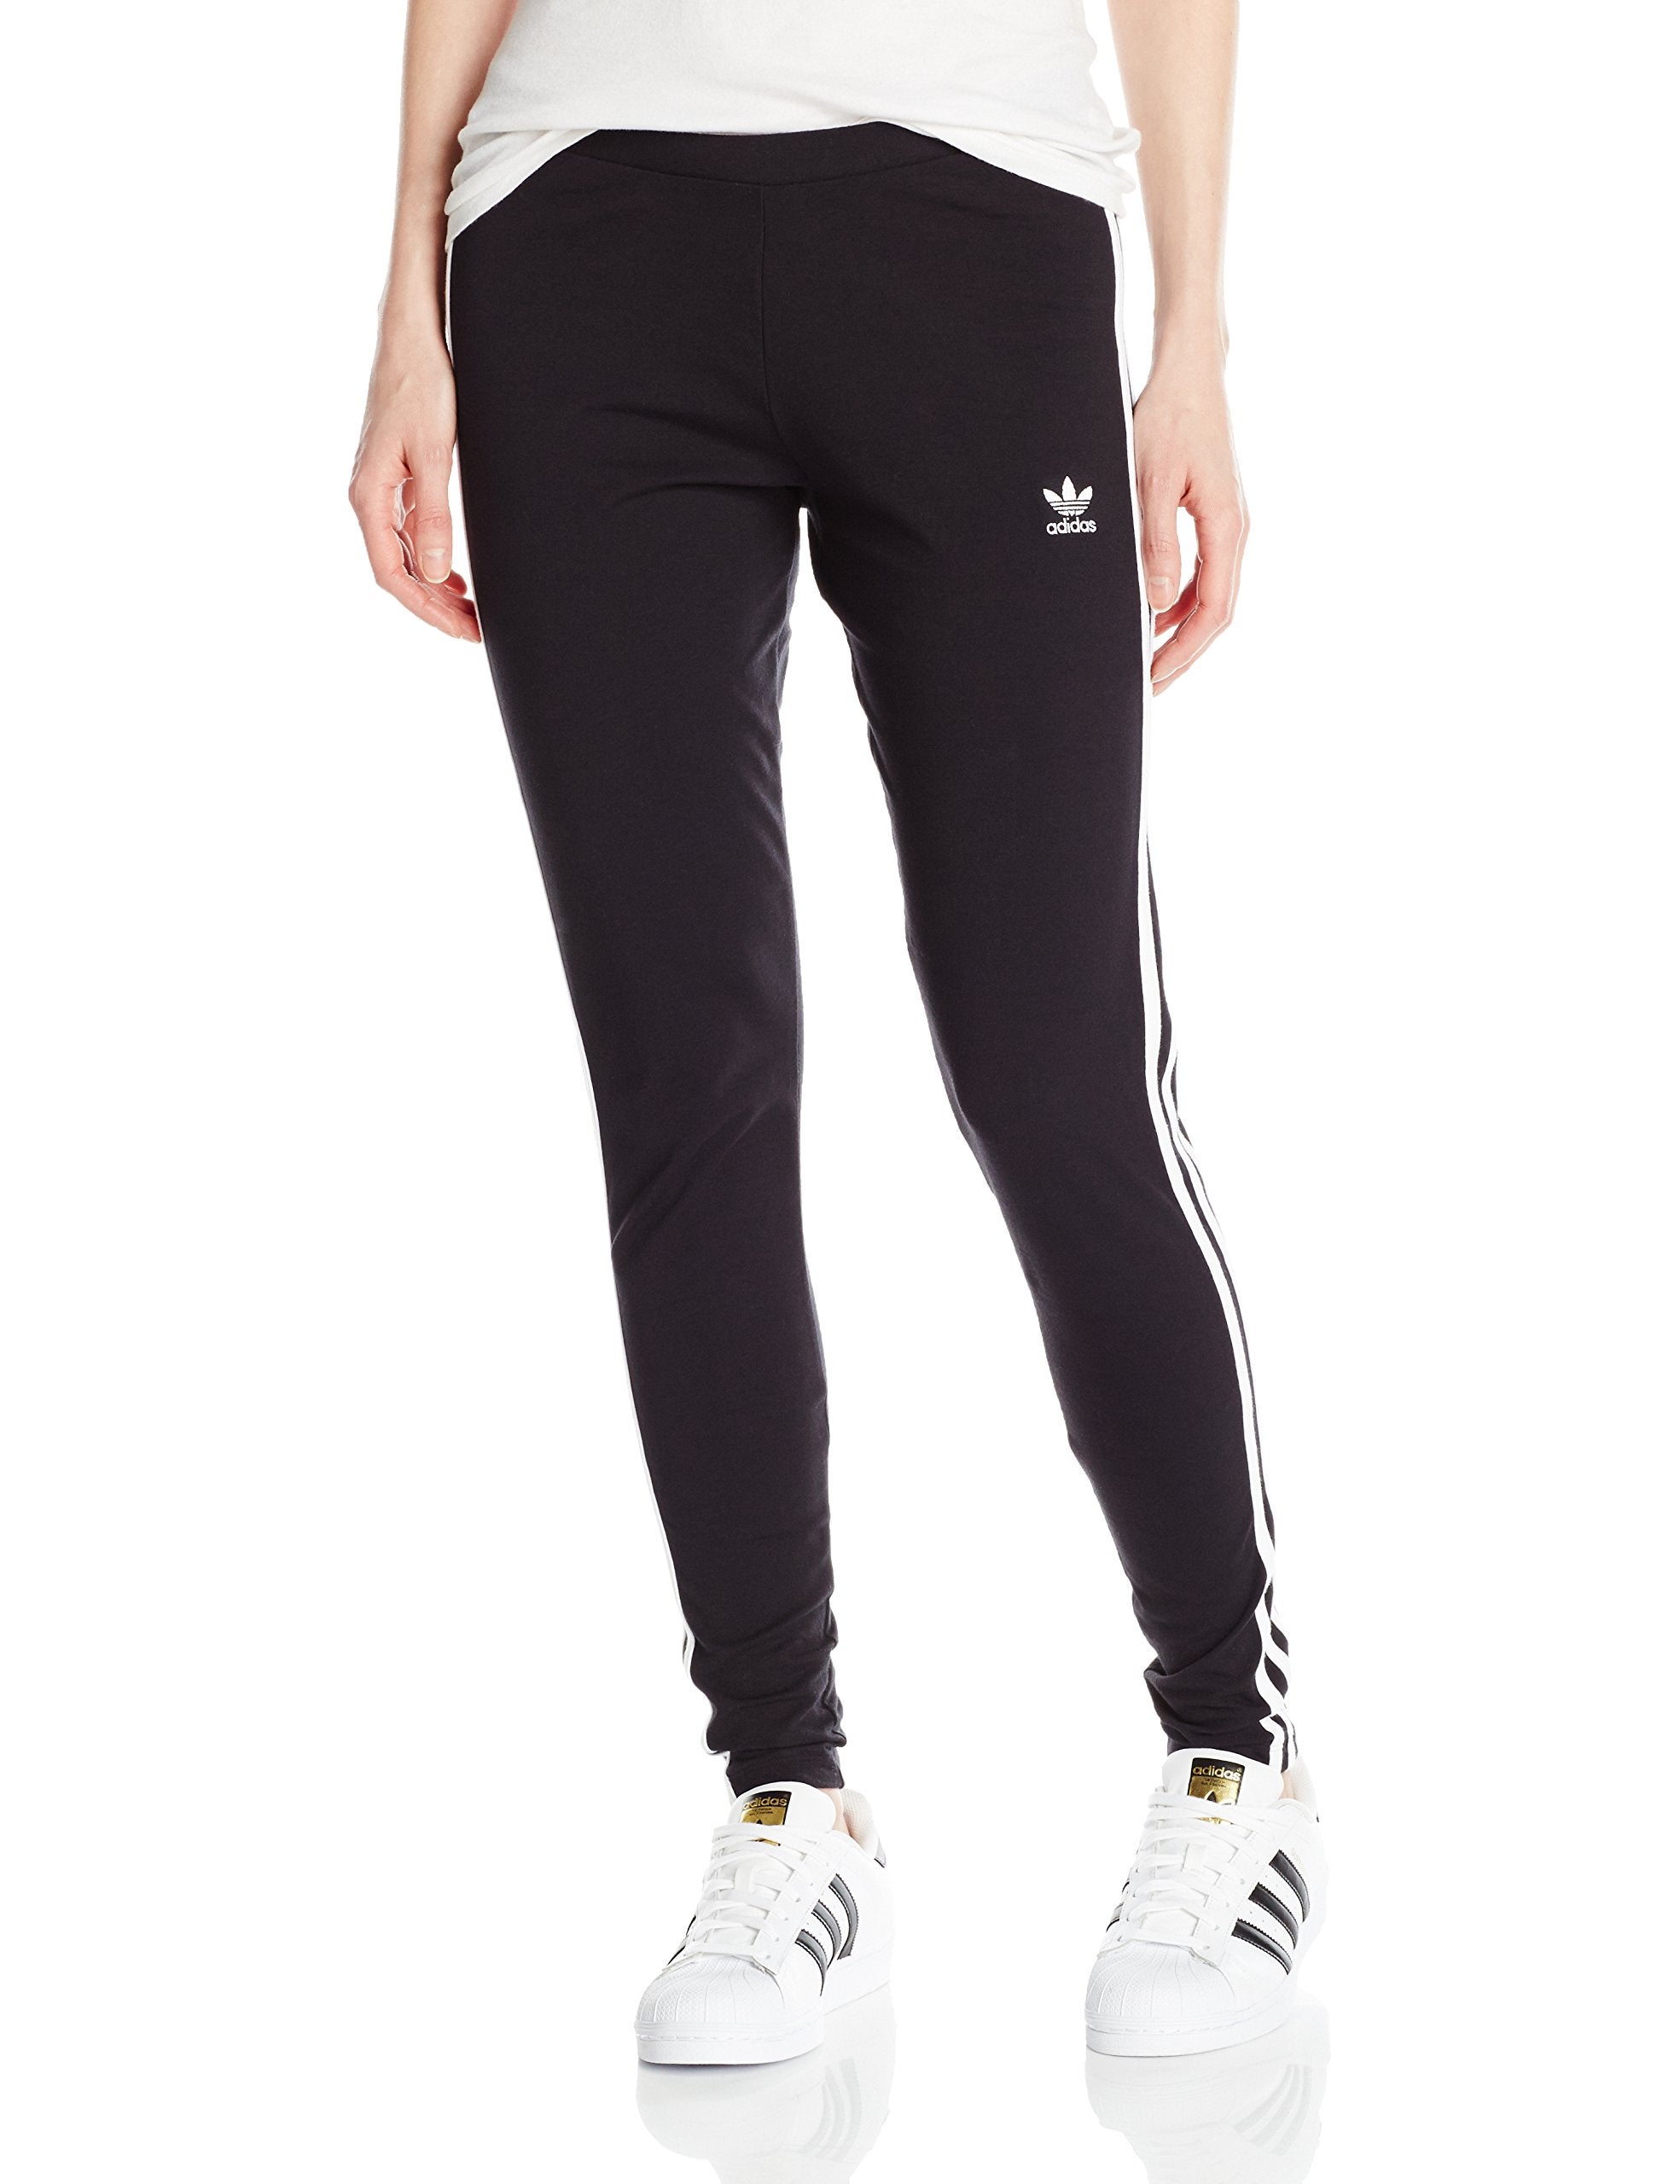 Adidas + 3-Stripes Leggings